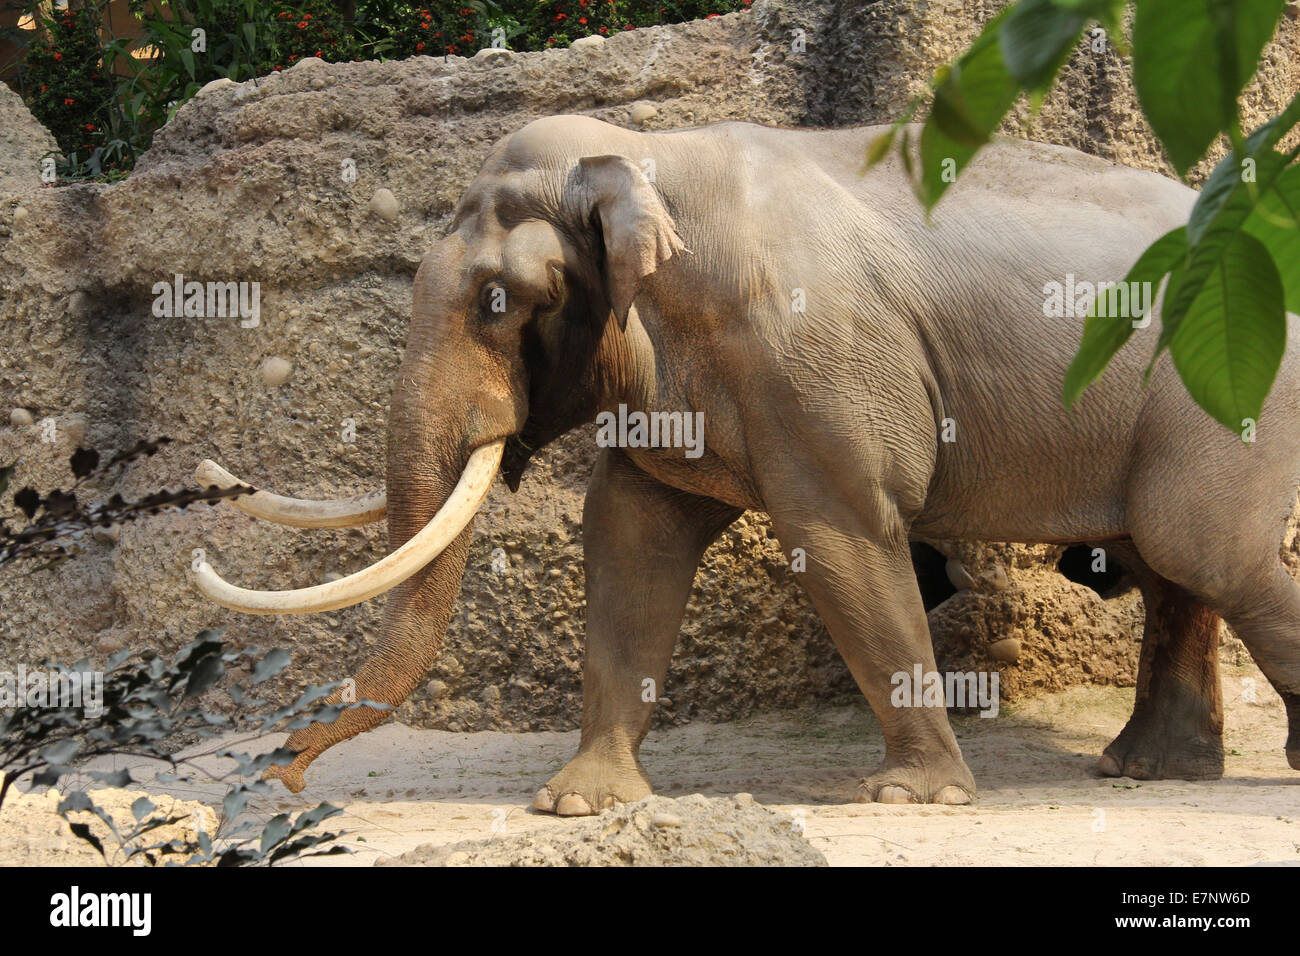 Switzerland, Zurich, zoo, elephant house, species-appropriate, husbandry, elephant, animal, Stock Photo